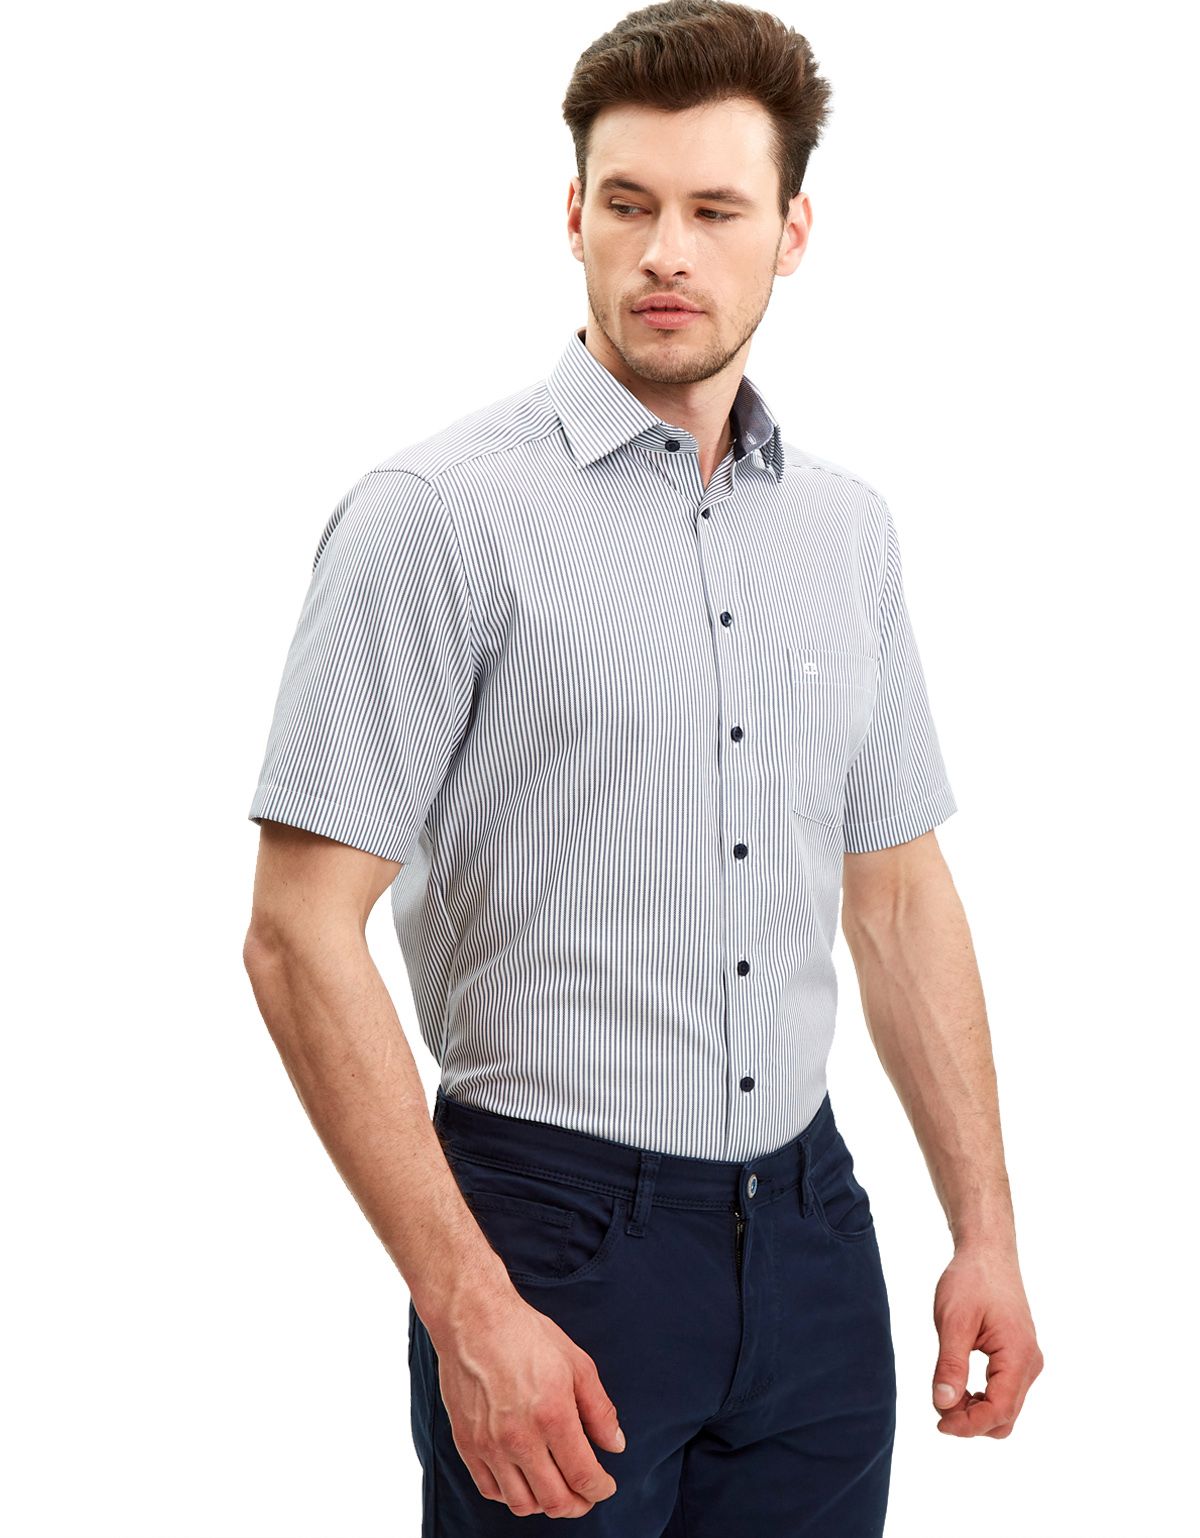 Рубашка мужская в полоску OLYMP Luxor, modern fit[СИНИЙ]